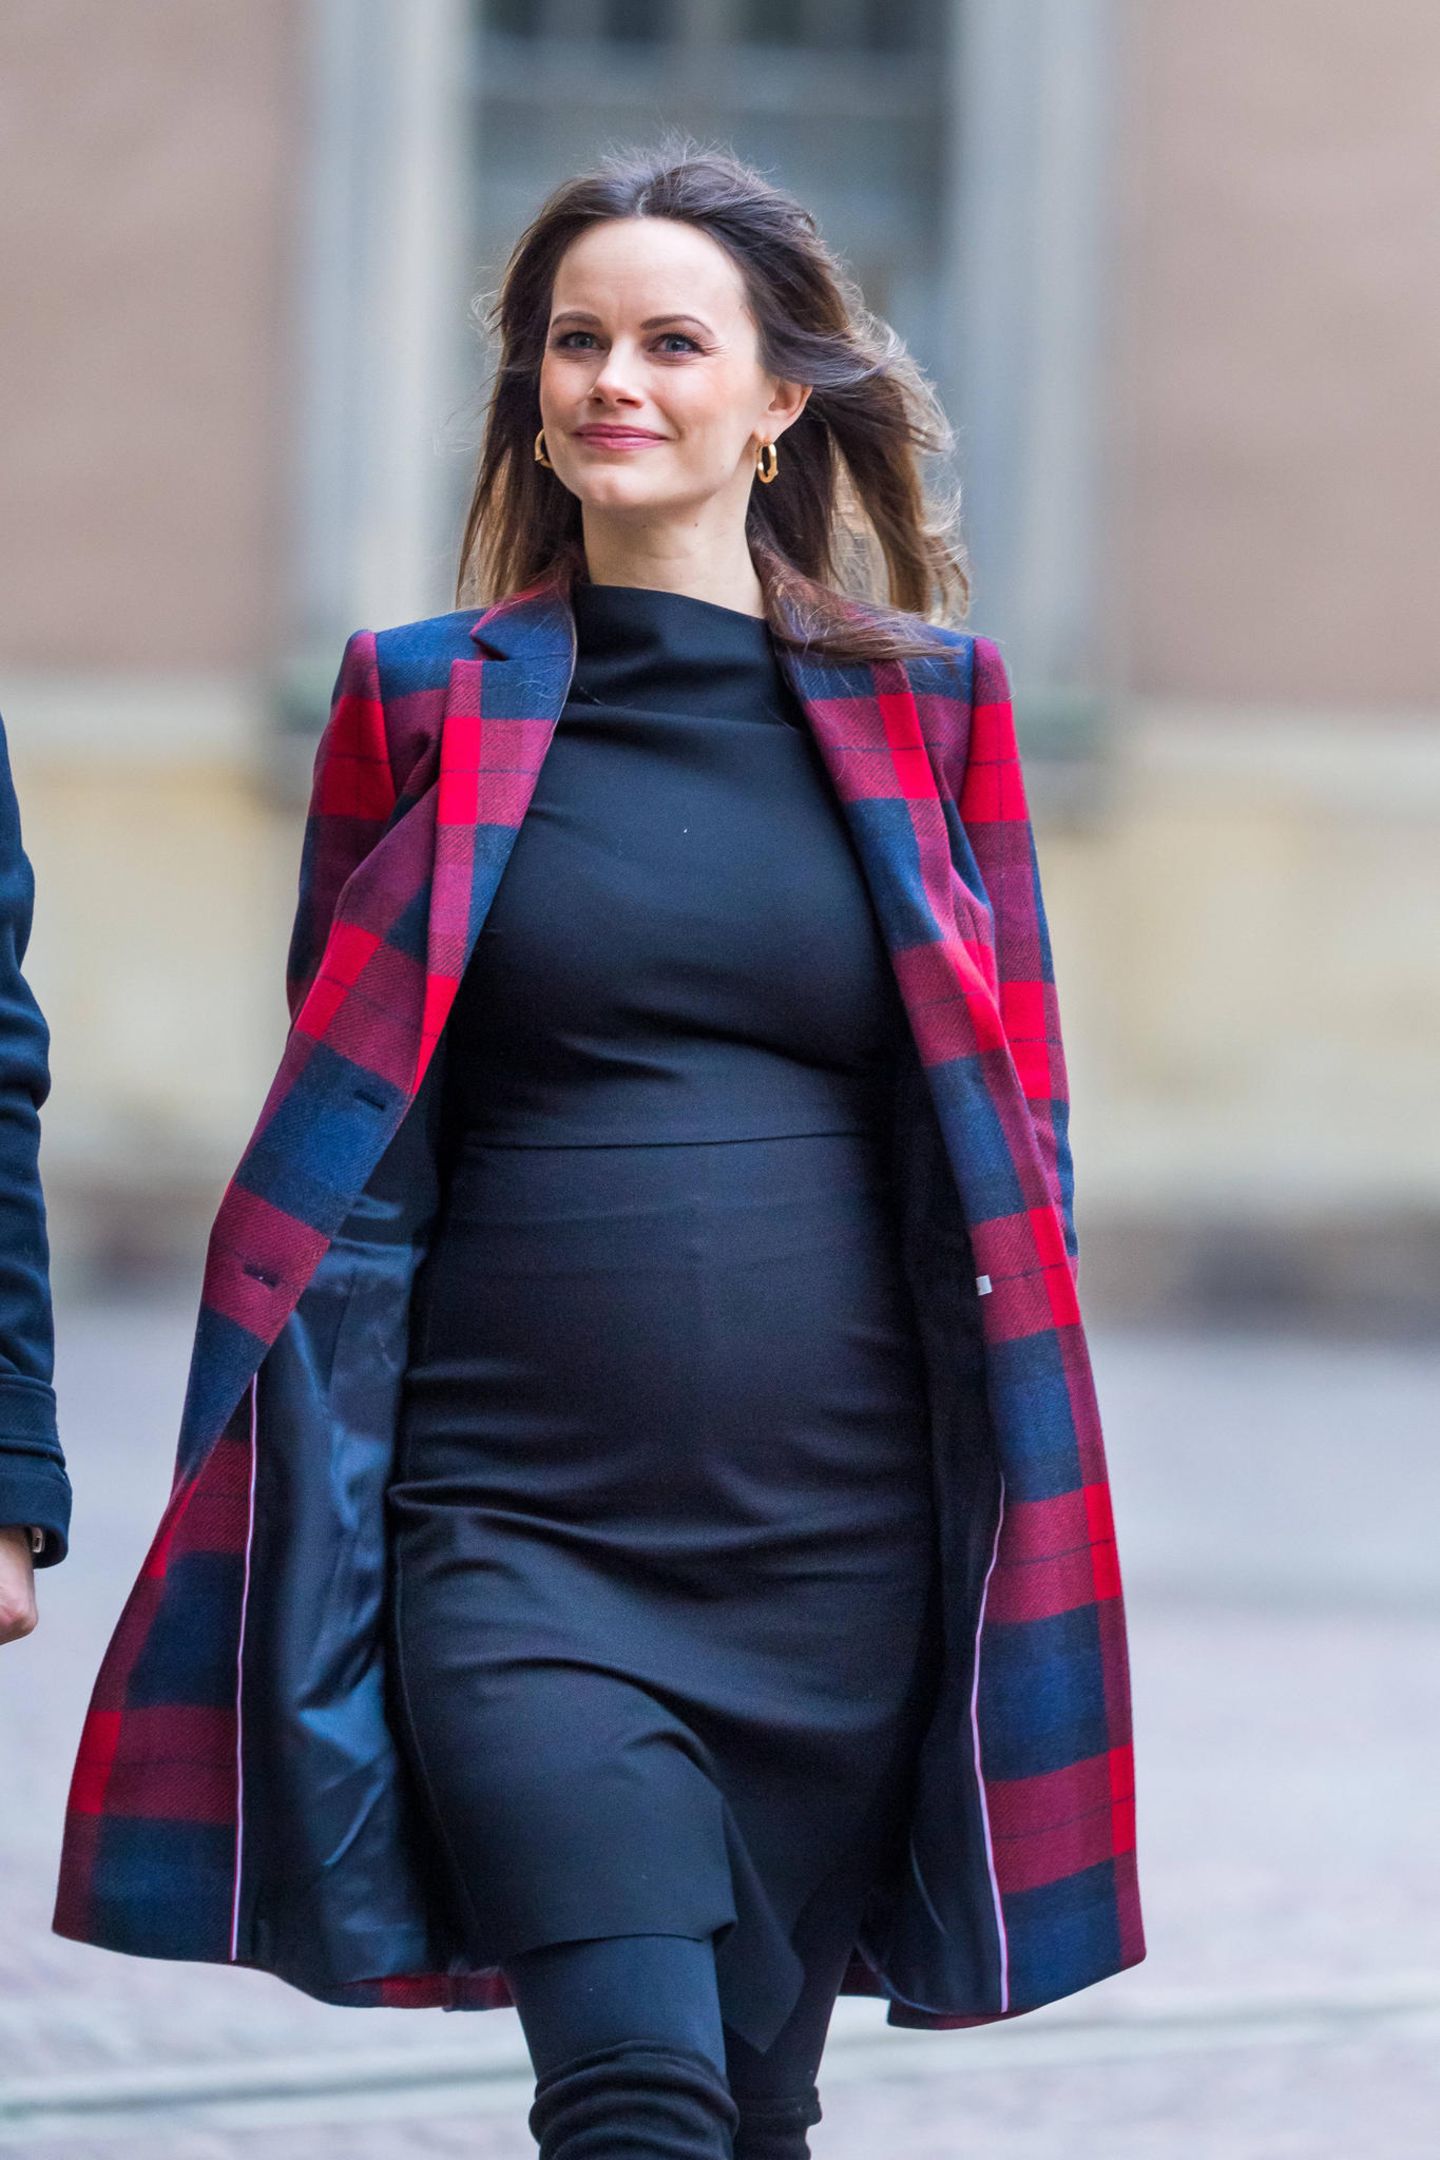 Da ist der Babybauch - und die werdende Mama strahlt! Prinzessin Sofia von Schweden absolviert ihren ersten öffentlichen Termin seit der Bekanntgabe ihrer dritten Schwangerschaft und hüllt die Babykugel in einen engen schwarzen Rock. 